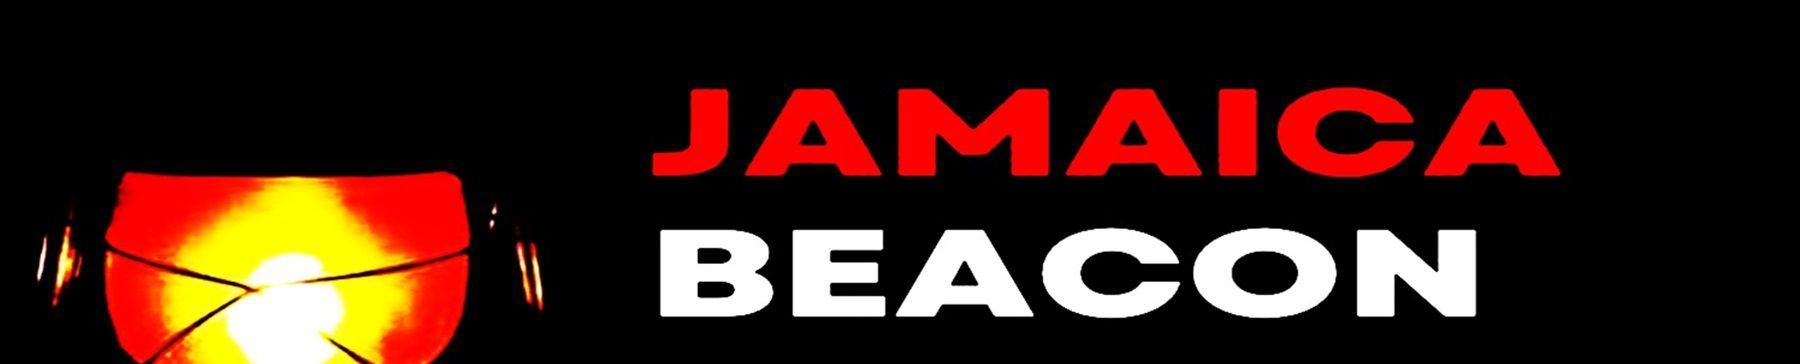 Jamaica Beacon